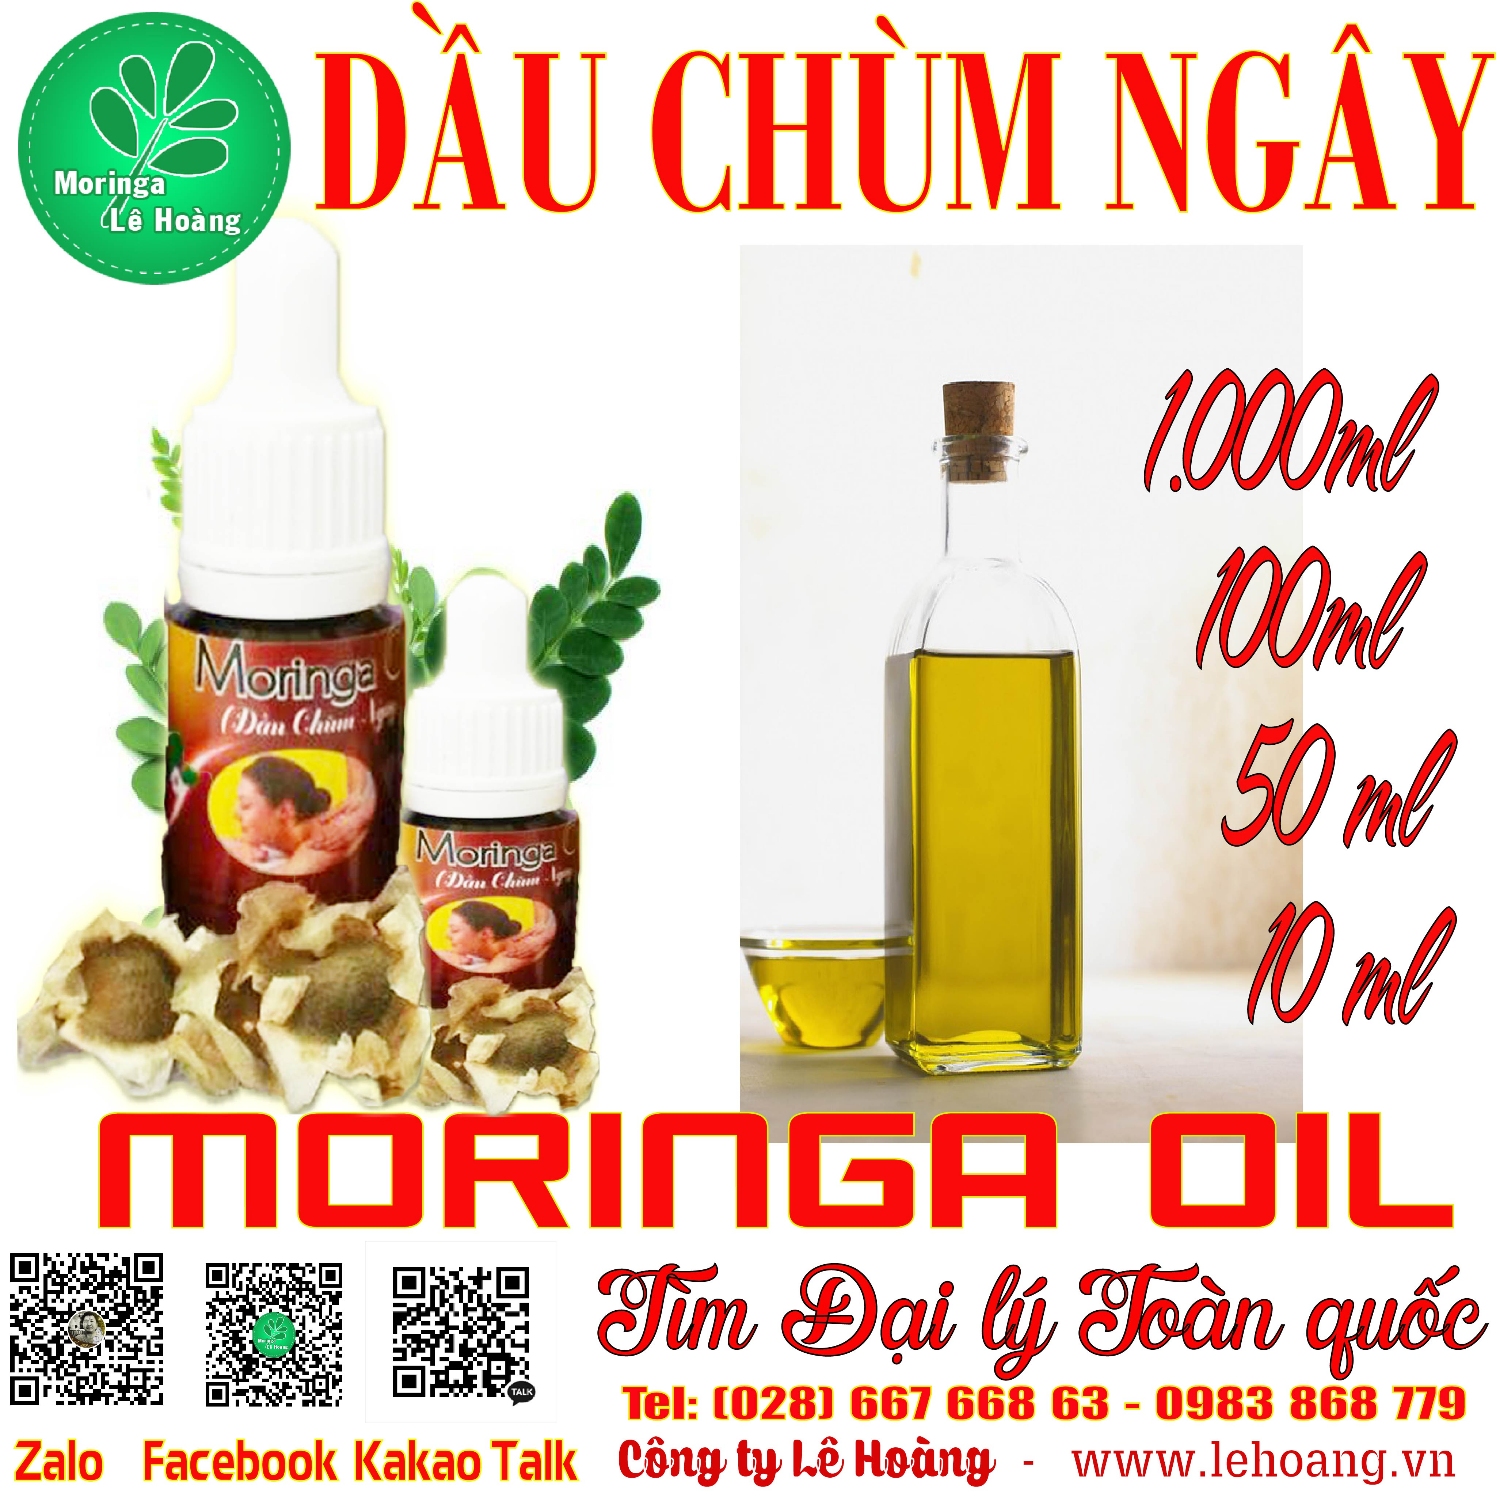 Dầu Chùm ngây (Moringa Seed Oil)